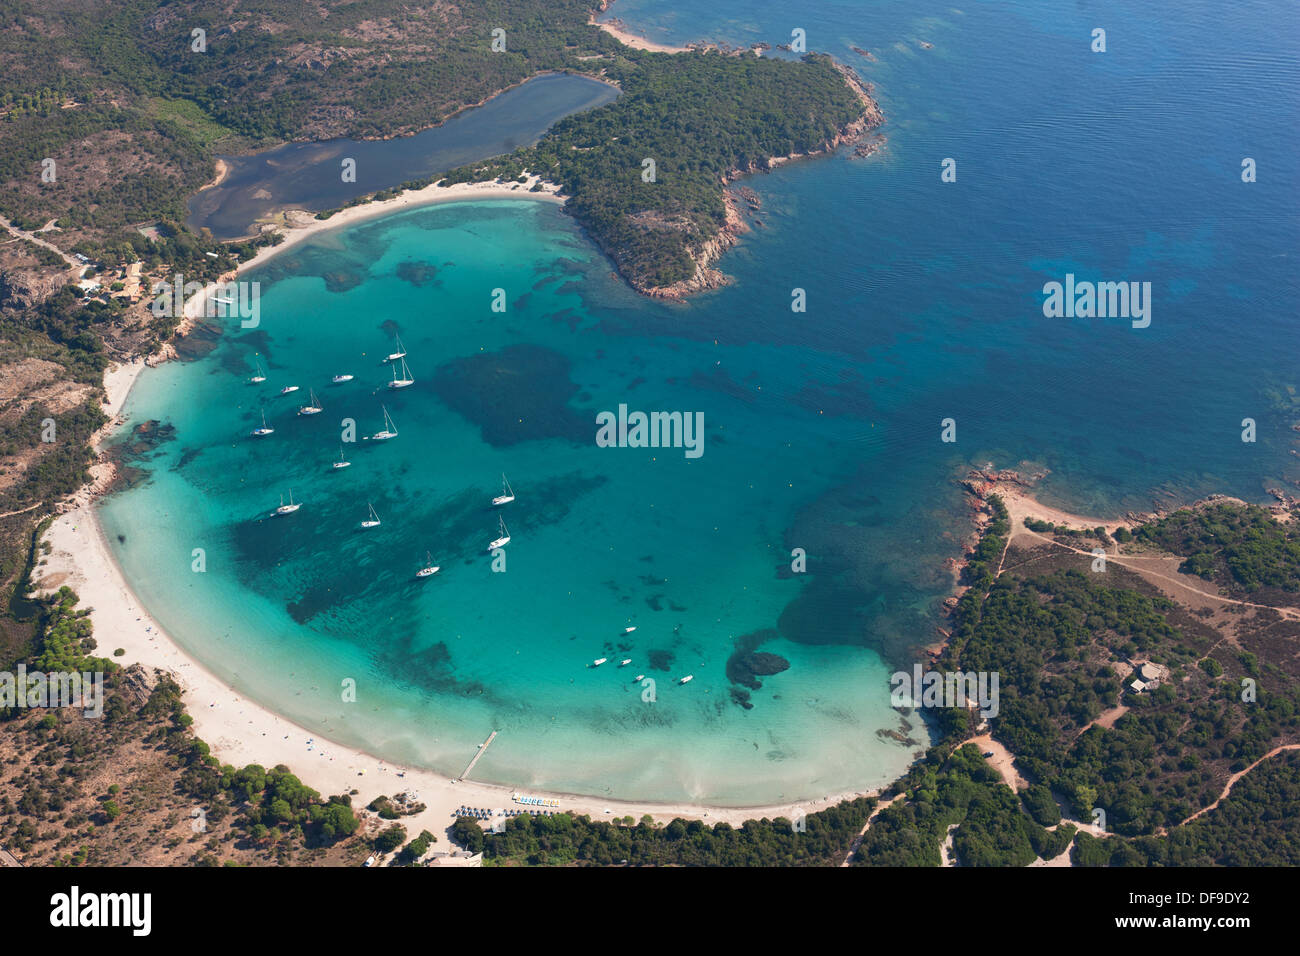 VUE AÉRIENNE.Baie avec une forme semi-circulaire parfaite et un bleu étonnant.Golfe de Rondinara, Bonifacio, Corse, France. Banque D'Images